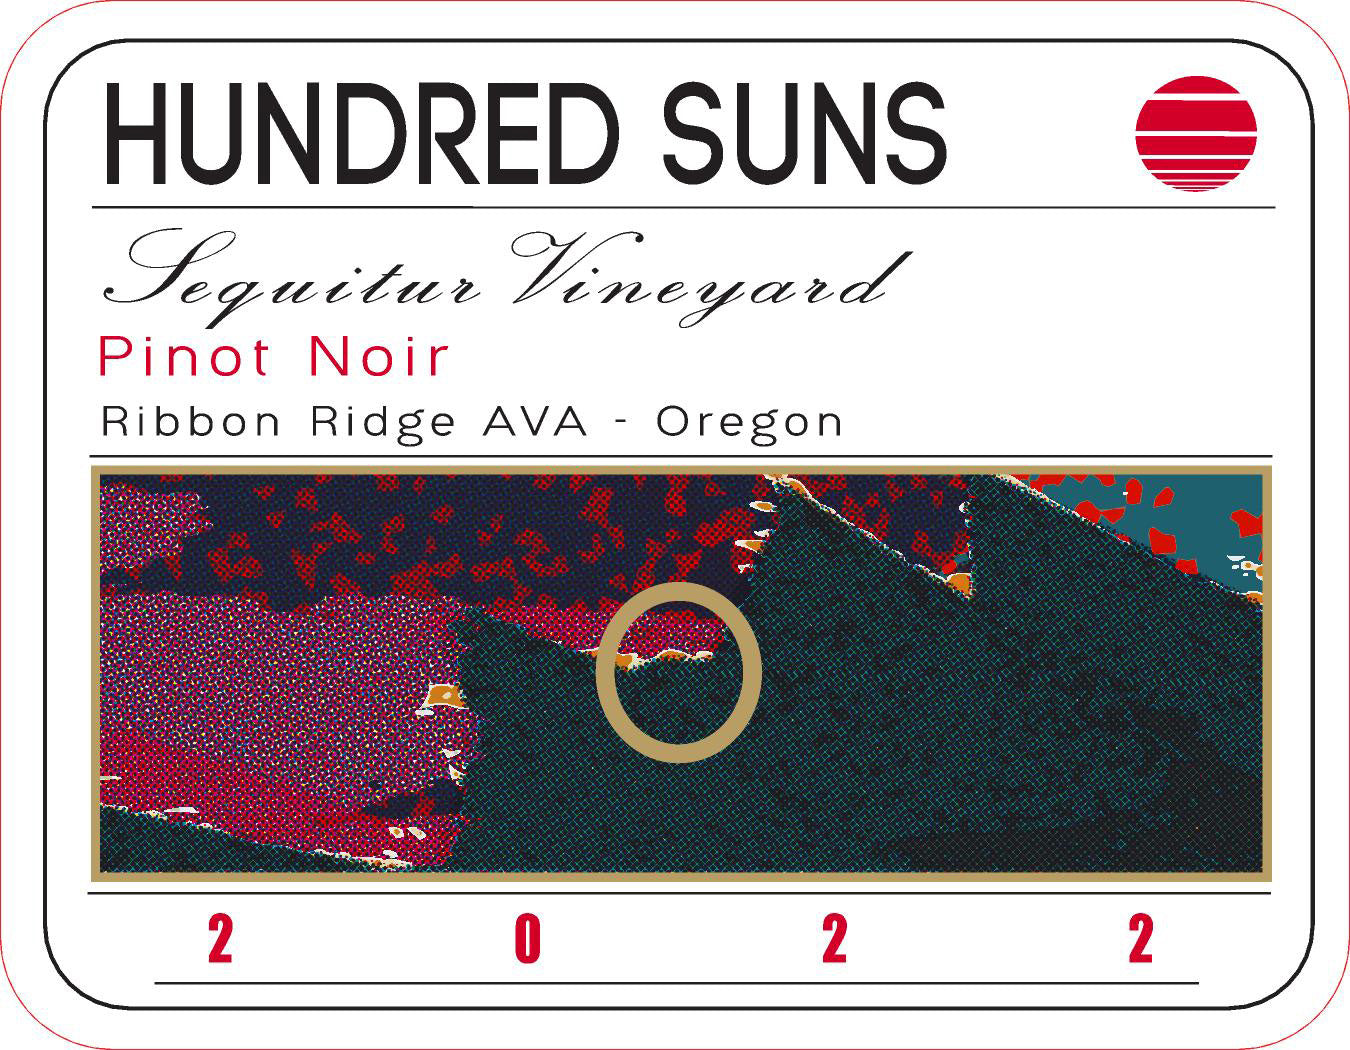 Hundred Suns Sequitur Vineyard Pinot Noir 2022